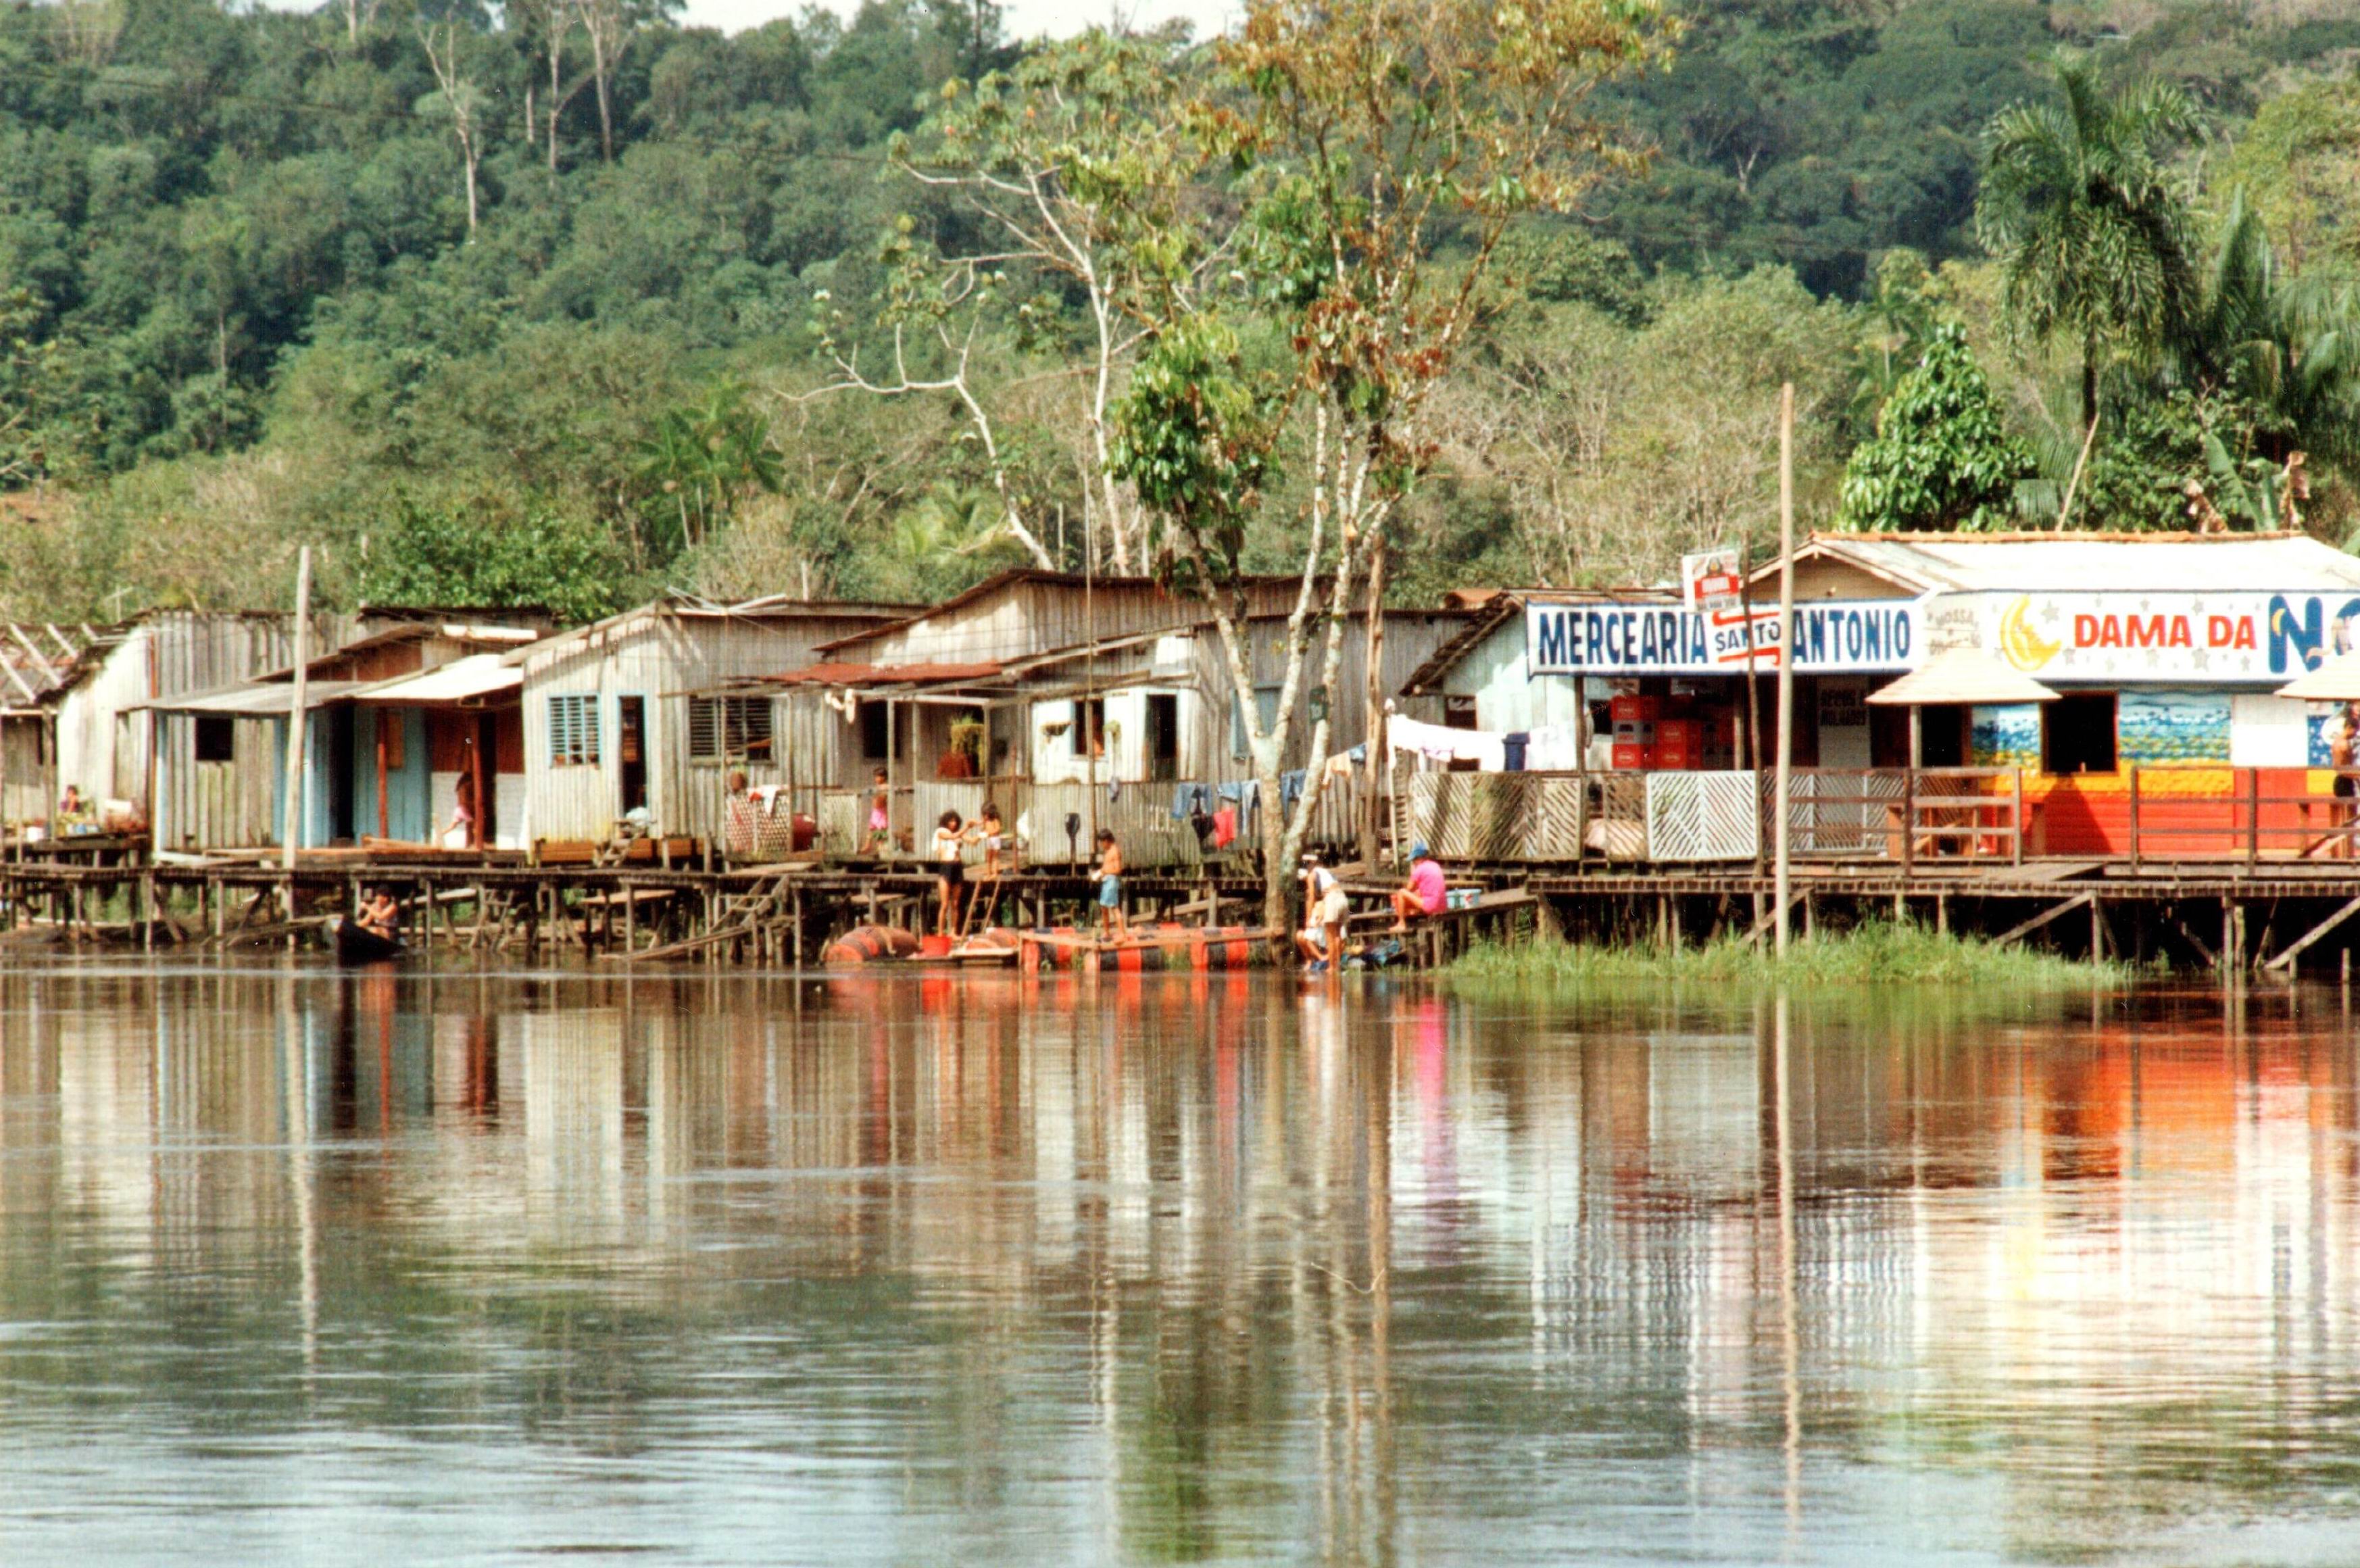 Sat pe Râul Amapari (fotografie realizată de membrii echipei).